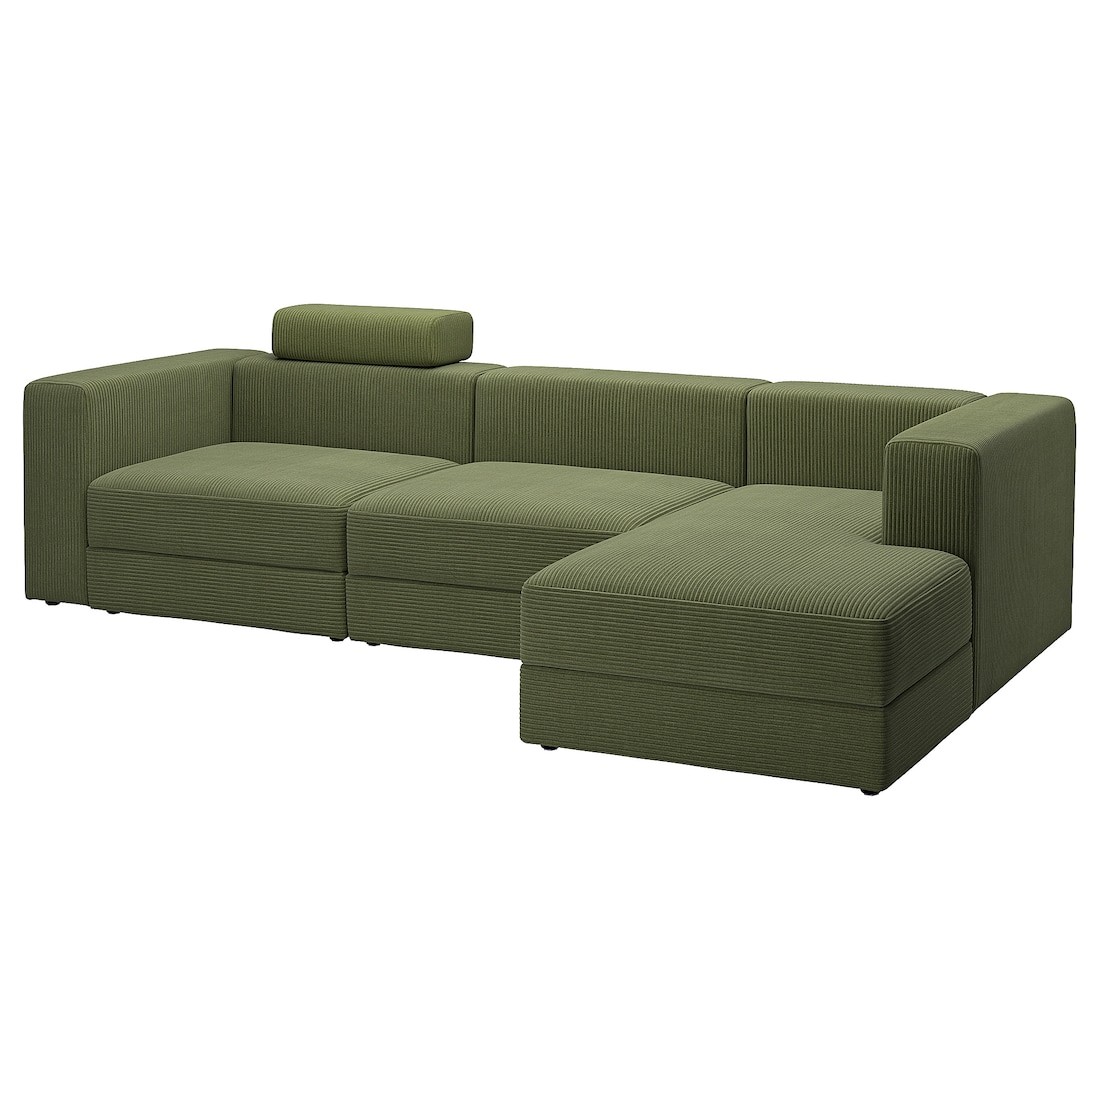 JÄTTEBO 4-місний модульний диван з шезлонгом, правосторонній з узголів'ям / Samsala темний жовто-зелений